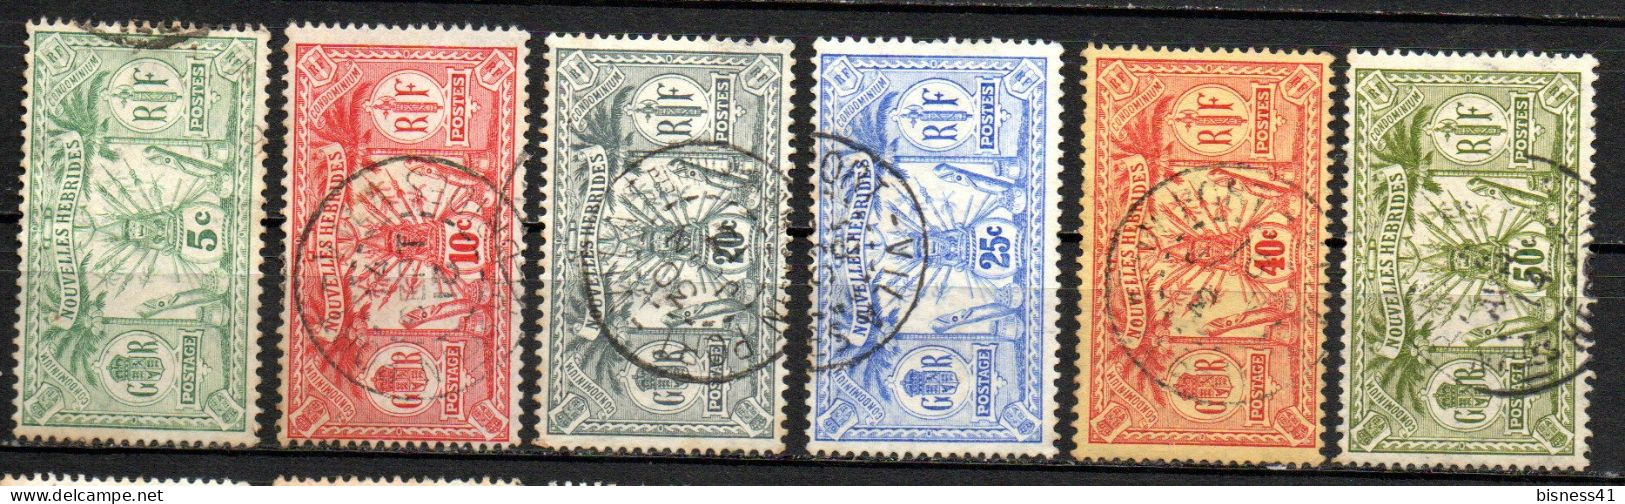 Col33 Colonie Nouvelles Hébrides N° 27 à 30 + 32 & 33 Oblitéré Cote : 33,50 € - Used Stamps